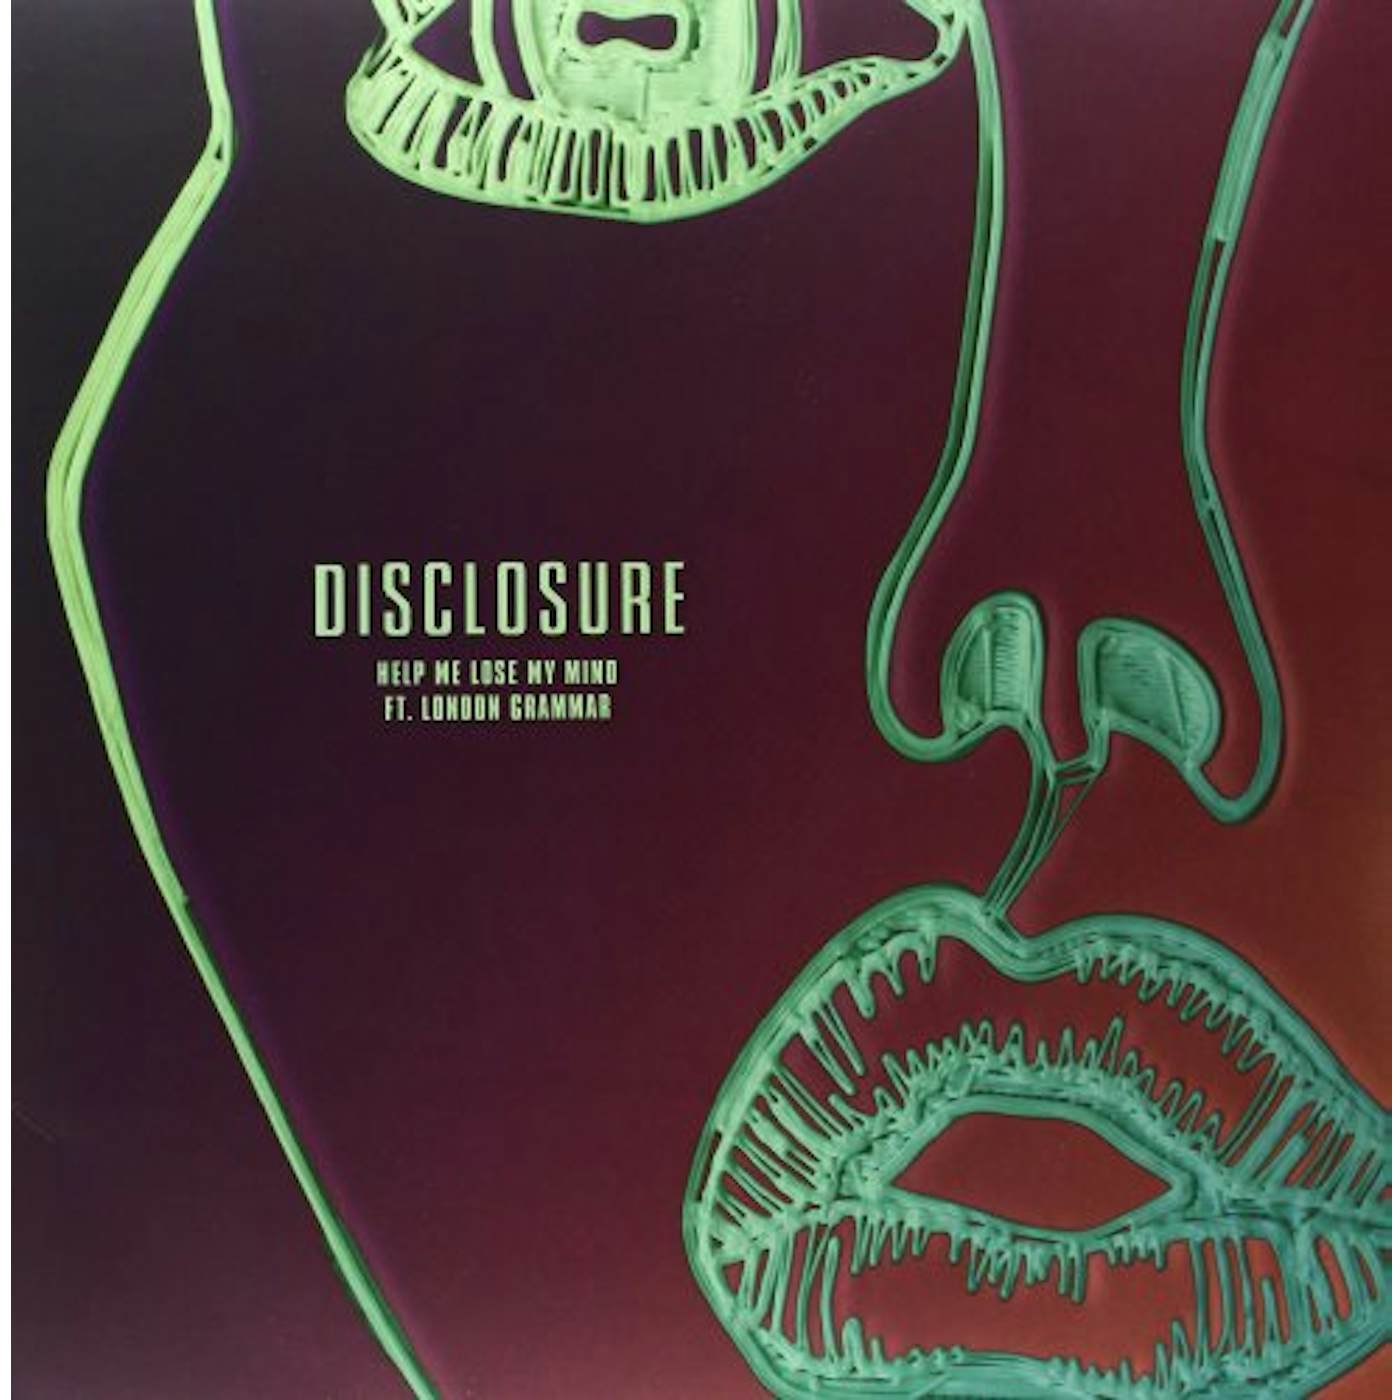 Disclosure HELP ME LOSE MY MIND (UK) (Vinyl)